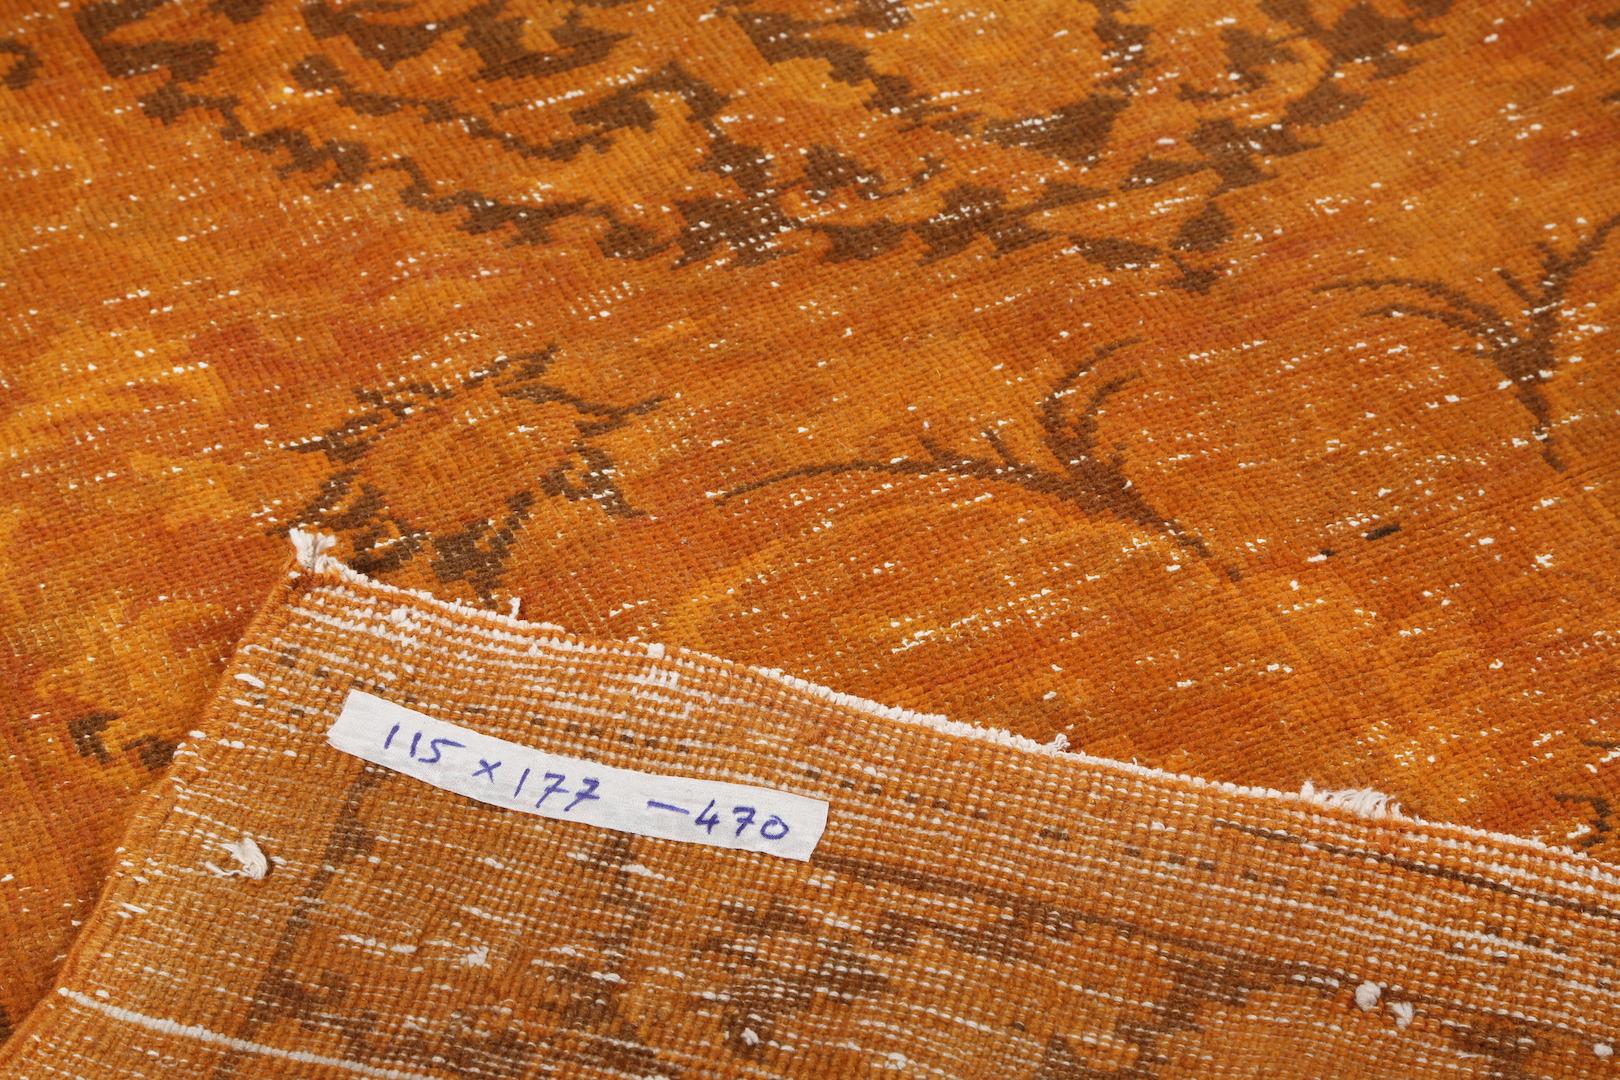 Un tapis turc vintage teint en orange pour les intérieurs contemporains. 
Finement noué à la main, poils de laine bas sur une base de coton. Lavage professionnel.
Robuste et pouvant être utilisé sur une zone à fort trafic, il convient aux